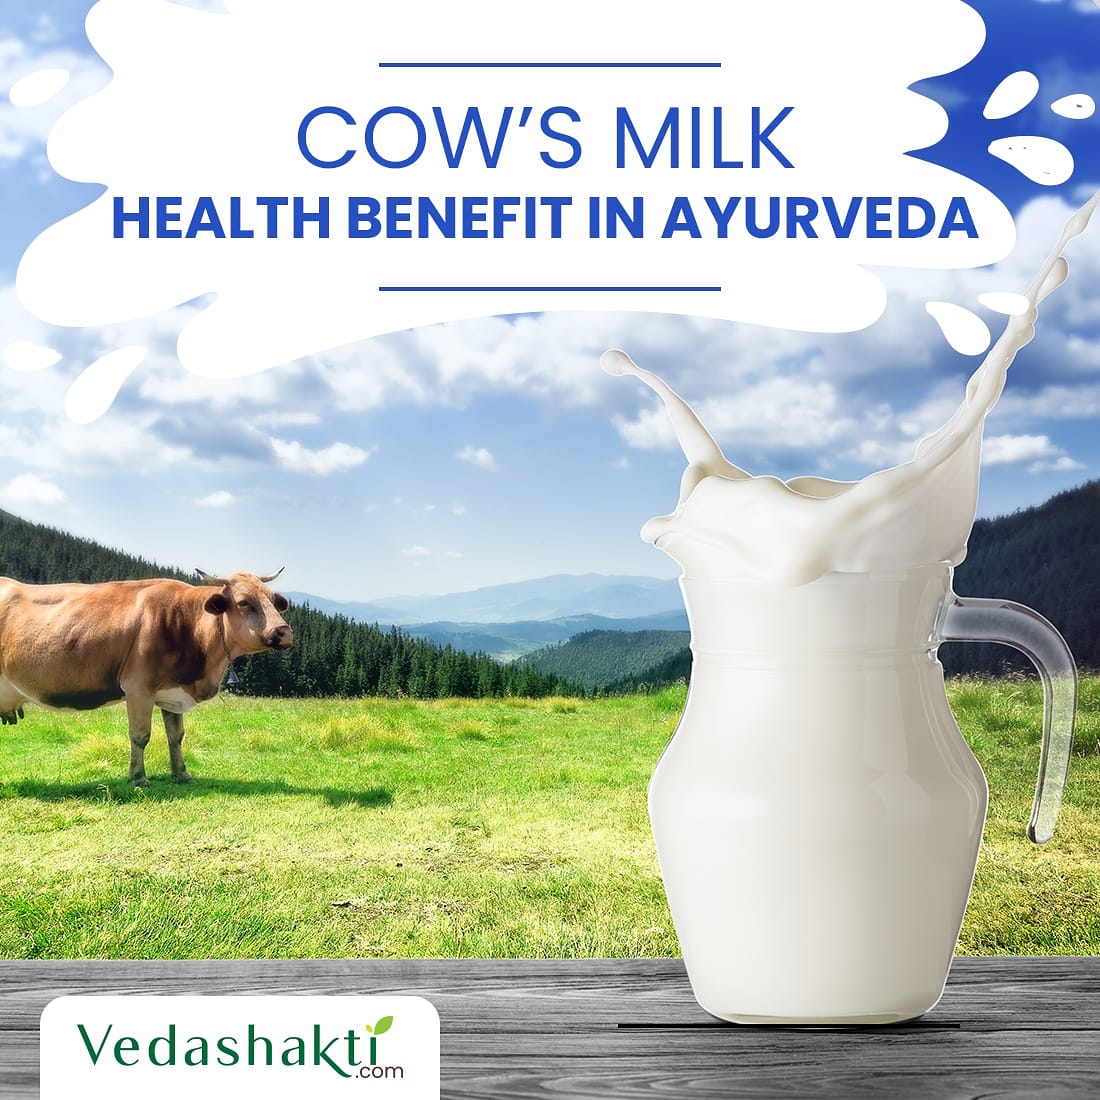 क्या आप जानते हैं गाय के दूध के ये फायदे, पढ़े vedashakti.com/health-wellnes…

#cow #milk #cowmilk #milkbenefits 
Author @velakrantikari